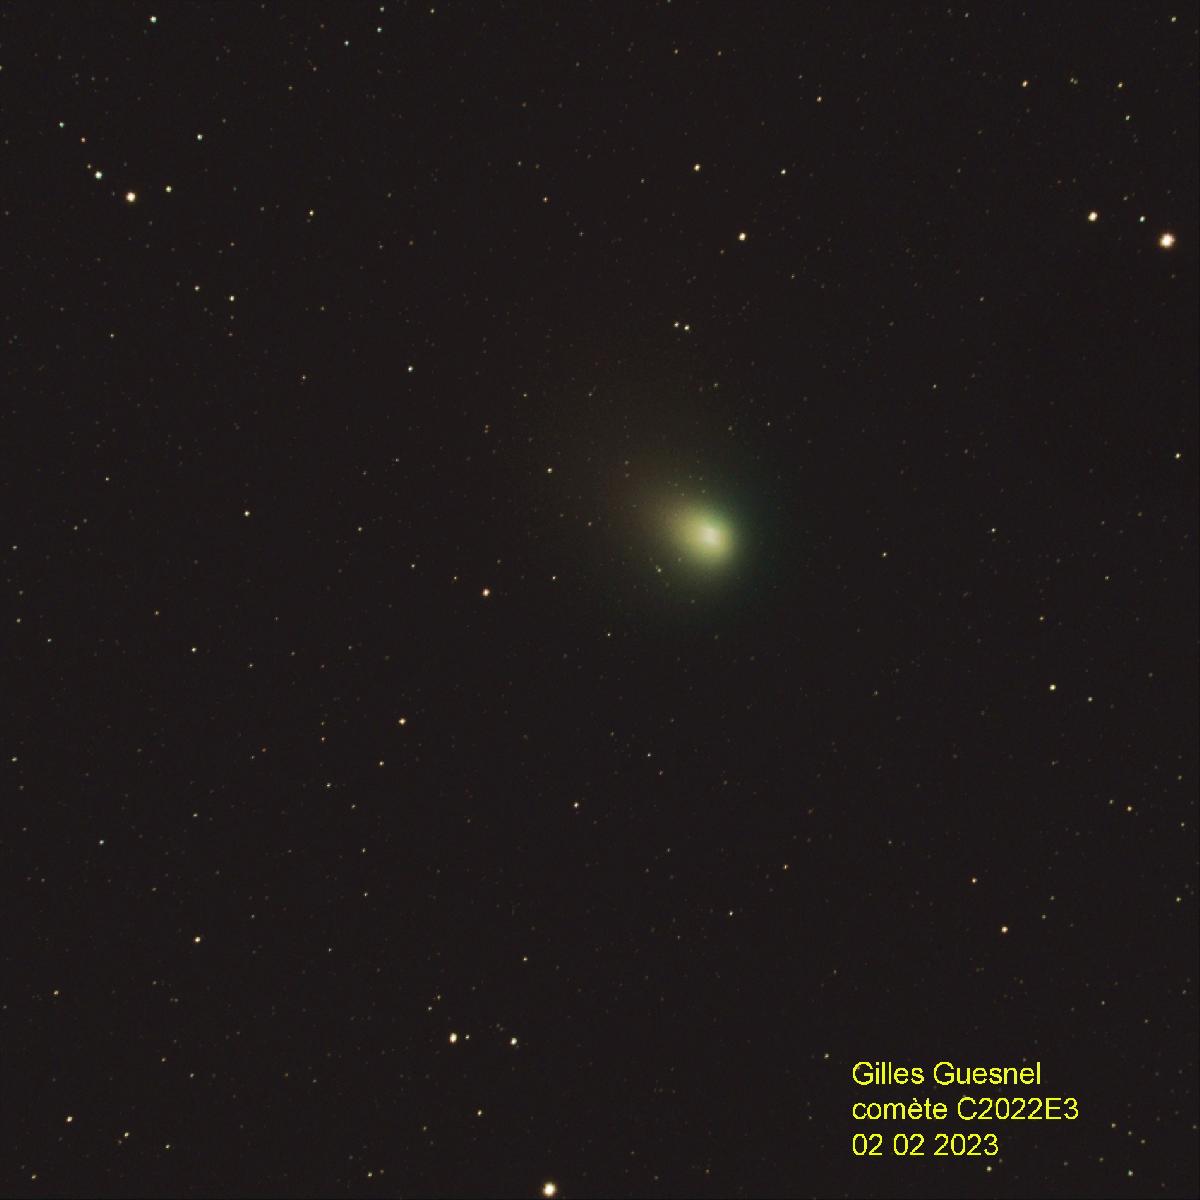 Comète C2022 E3